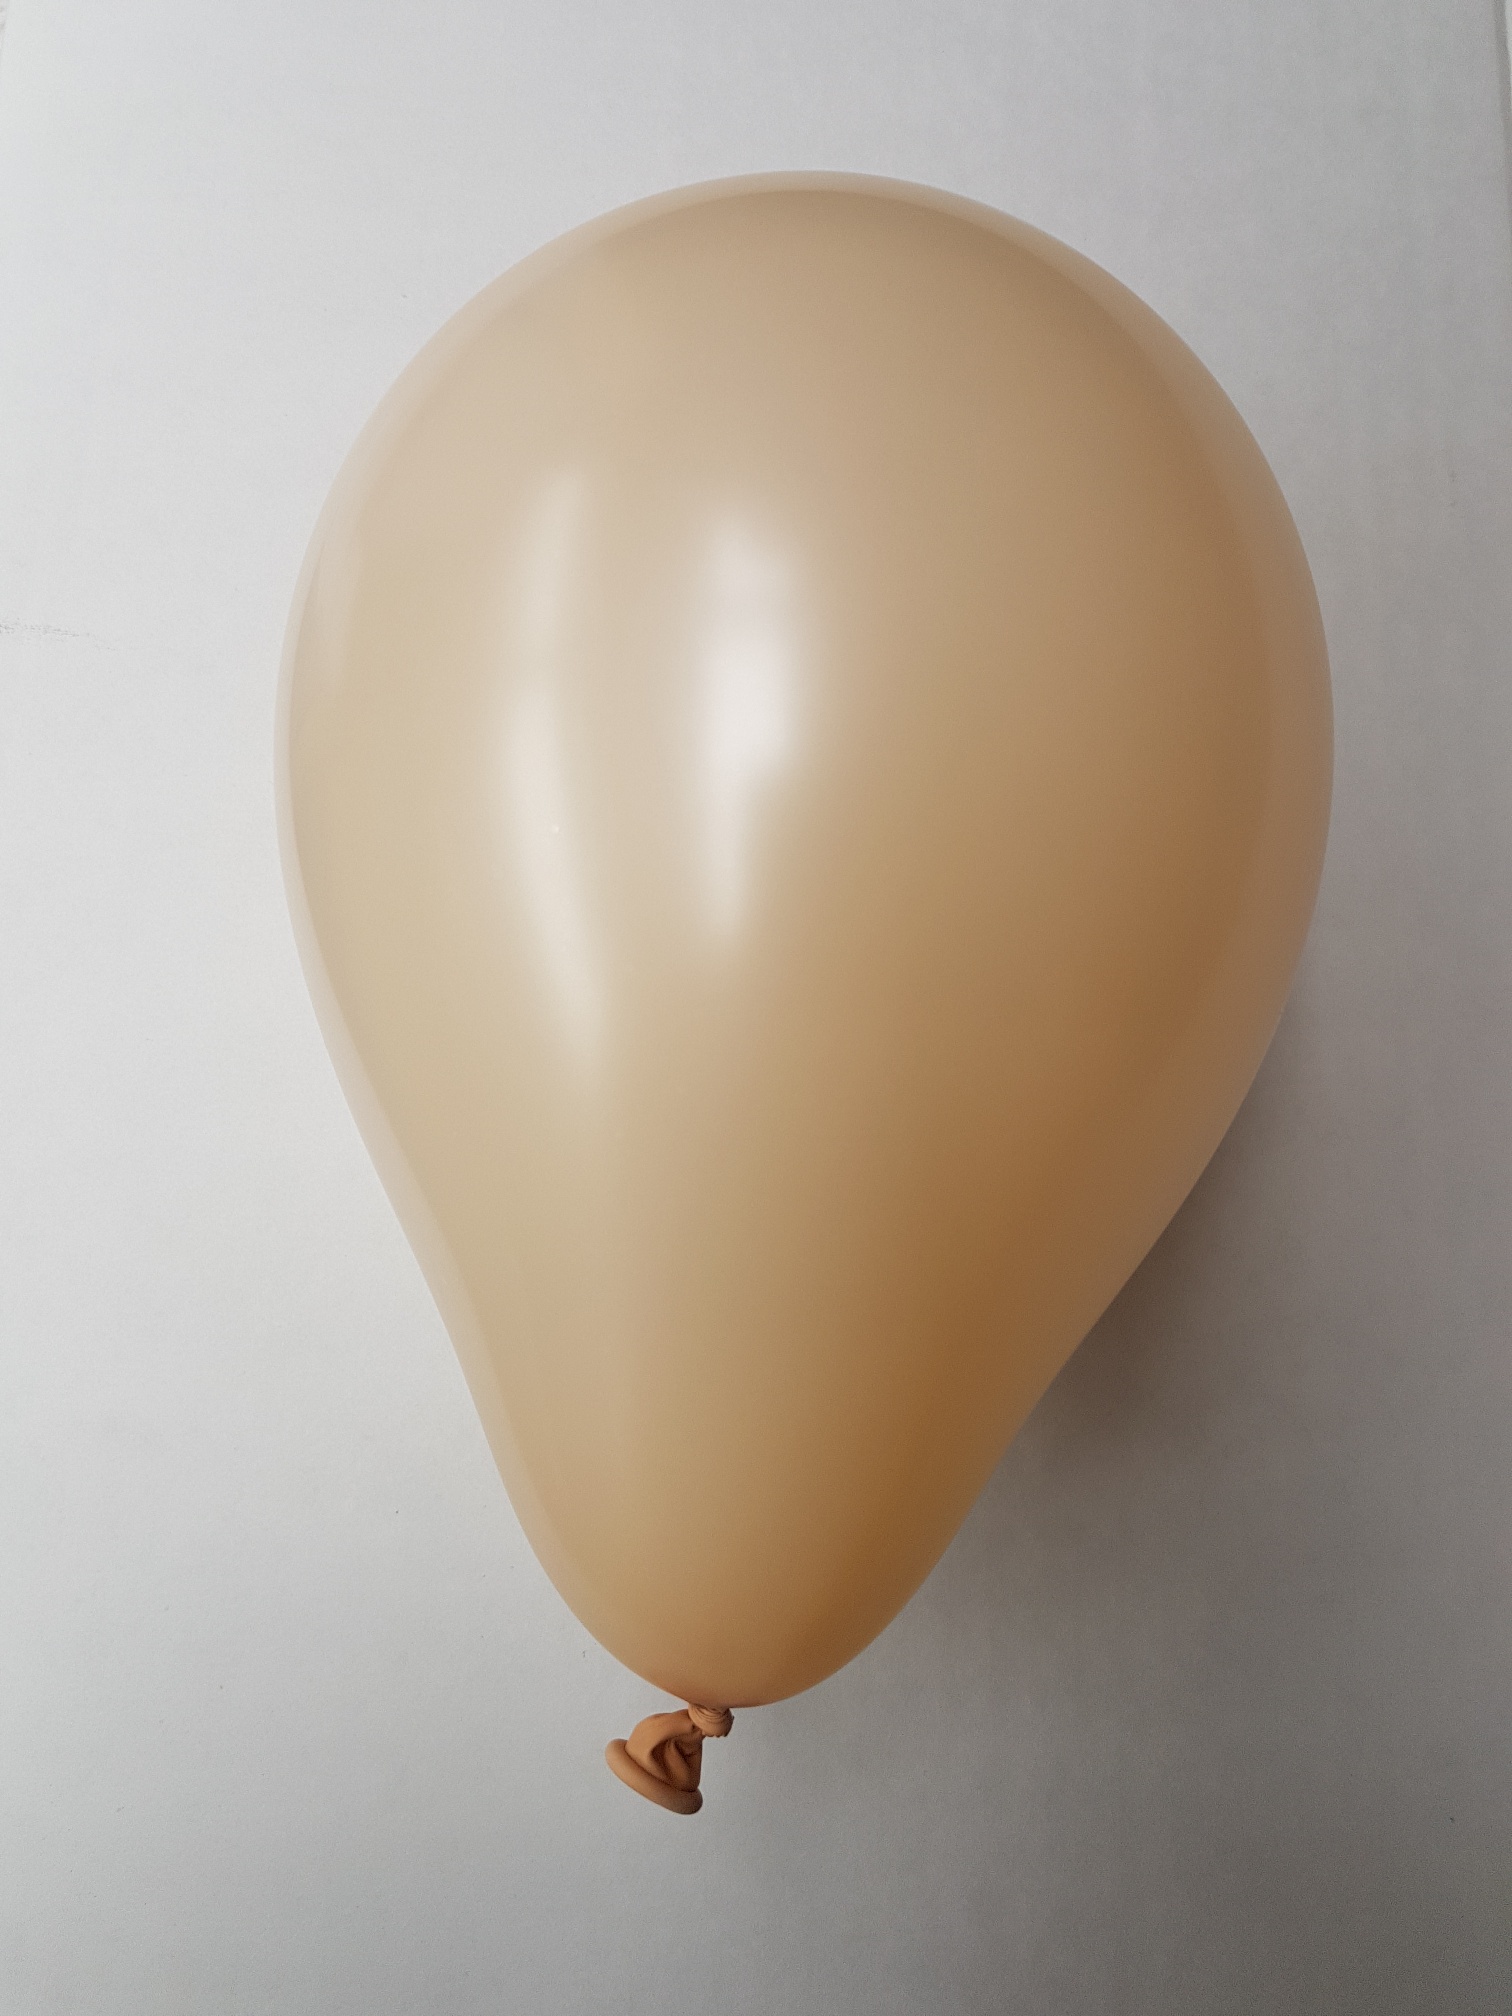 100st Pastel Ballonnen 12" Huidskleur-069